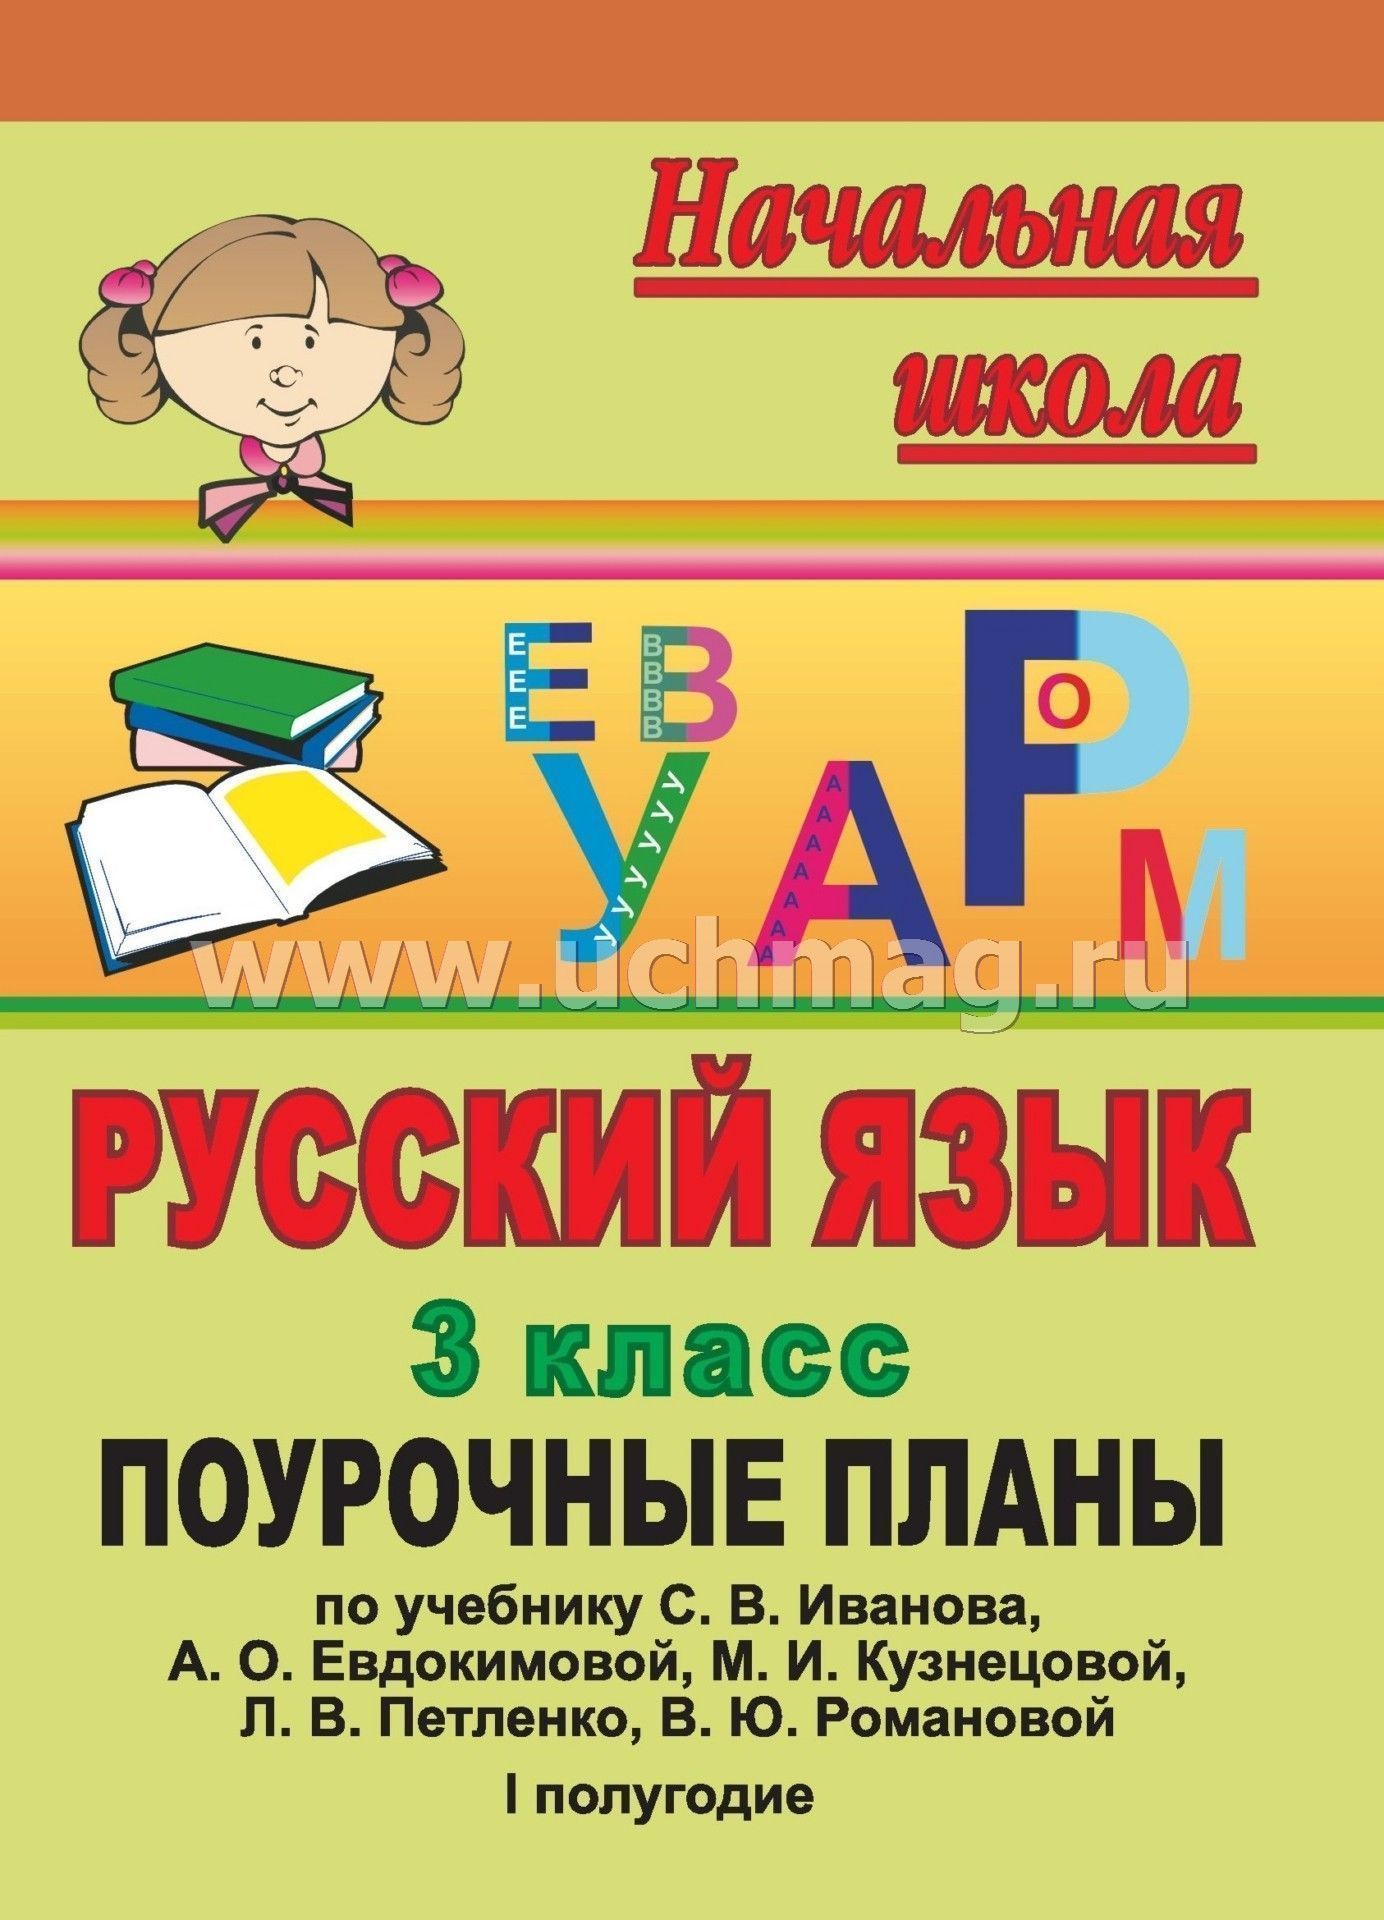 Конспект урока по русскому языку иванов текста в детстве 3 класс с